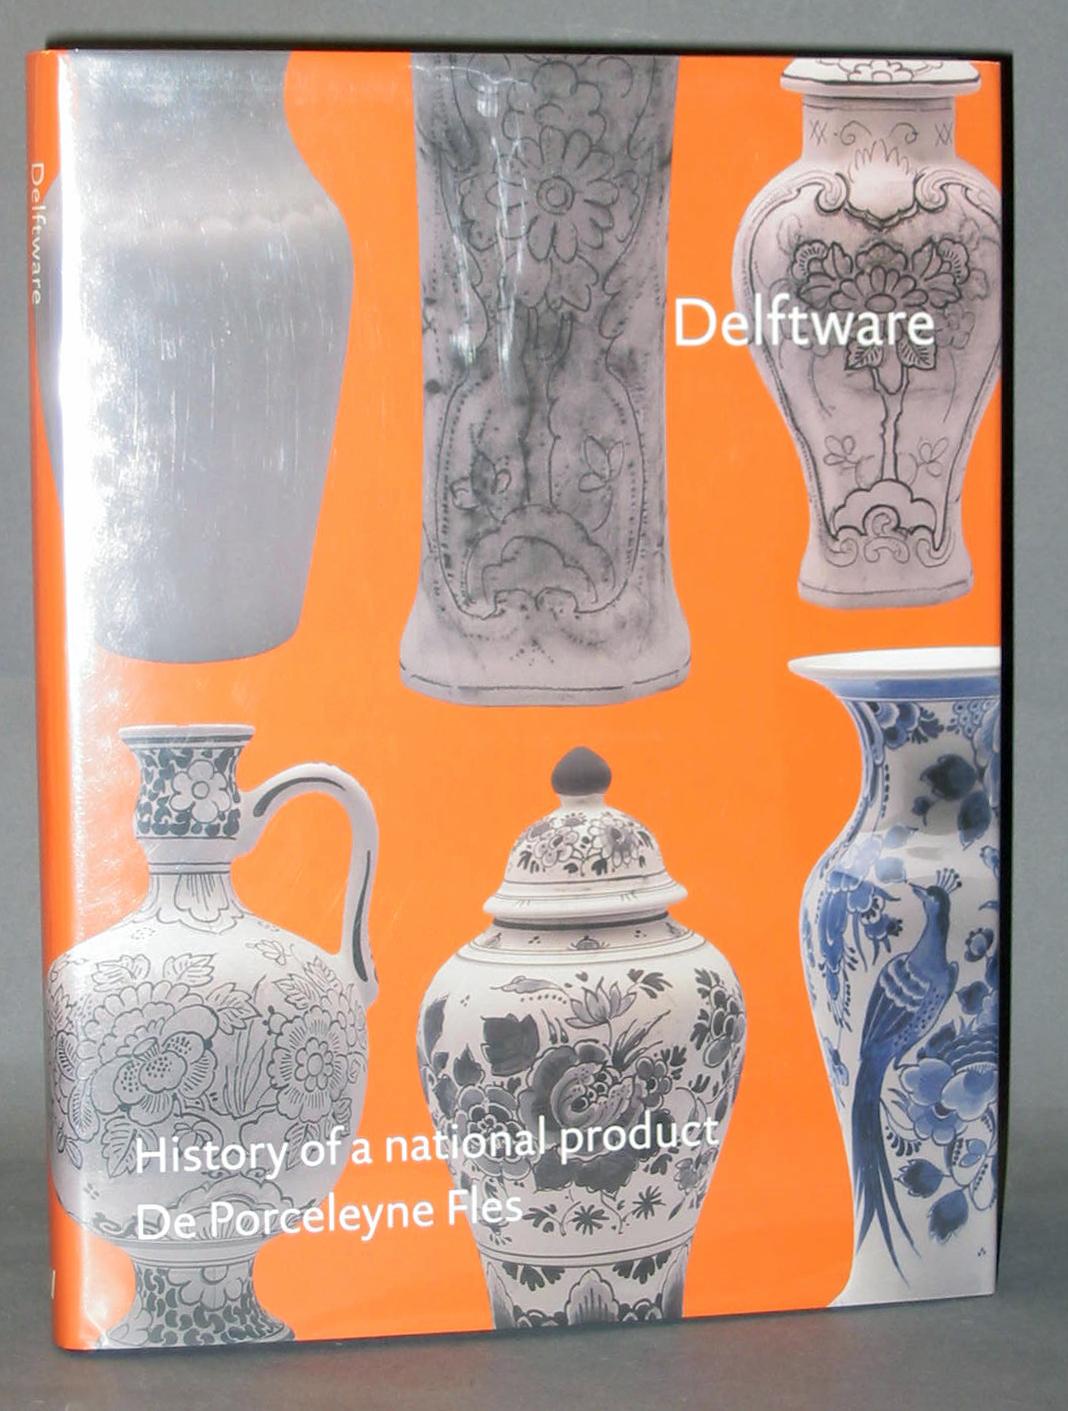 Delftware : History of a National Product. (Volume III) De Porceleyne Fles - Loet A. Schledorn, Titus M. Eliëns and Marion S. van Aken-Fehmers